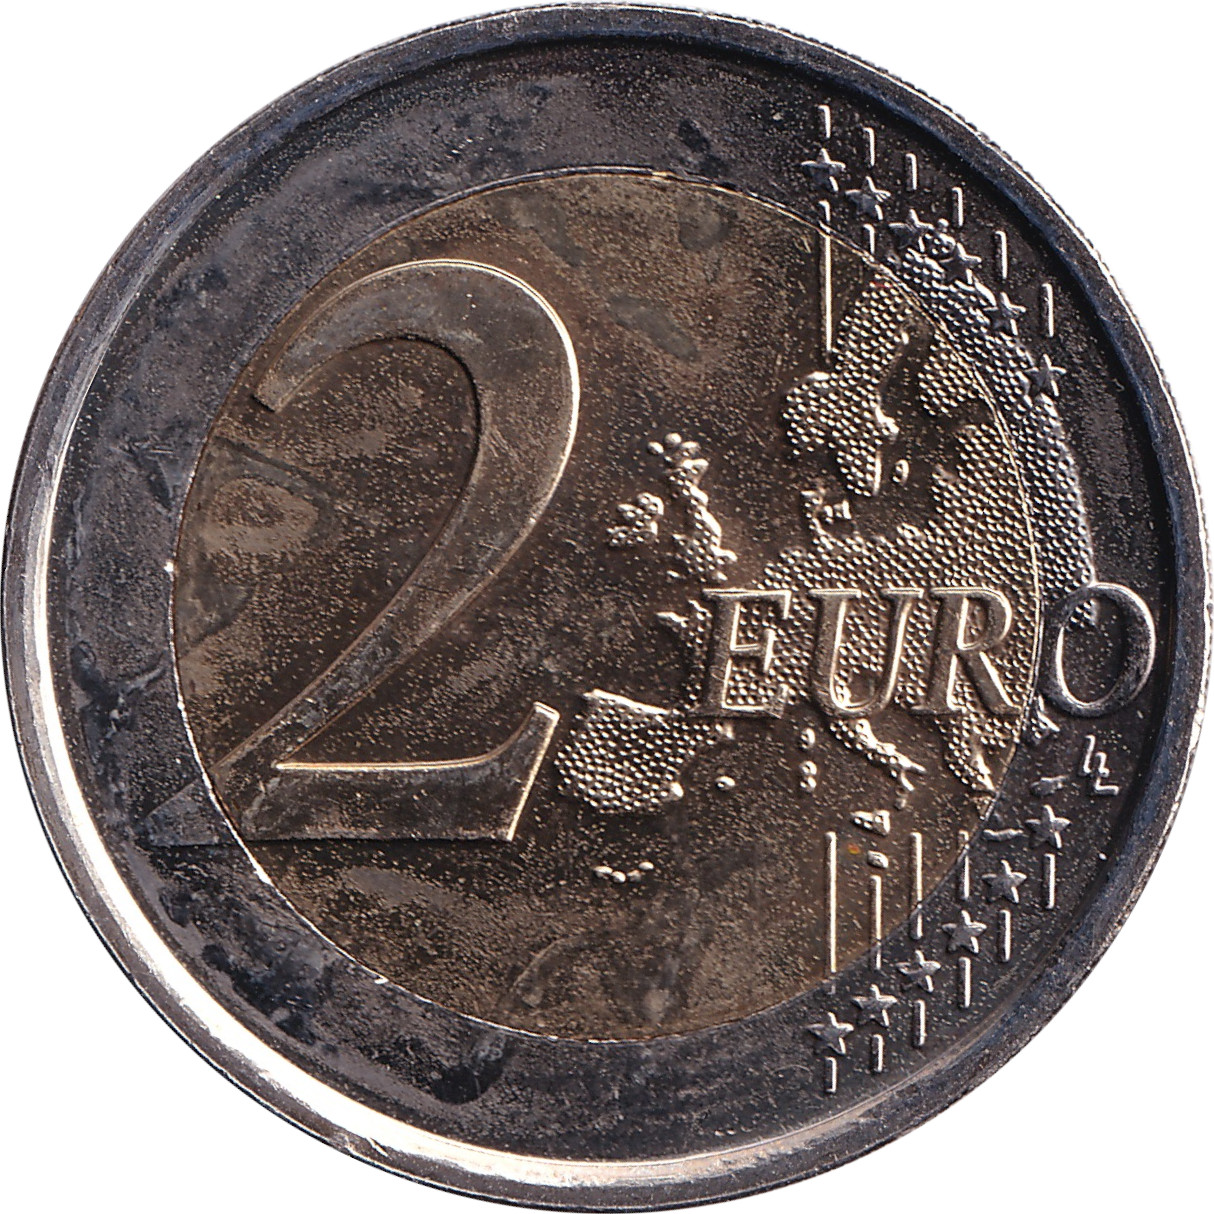 2 euro - Premiere guerre mondiale - 100 ans